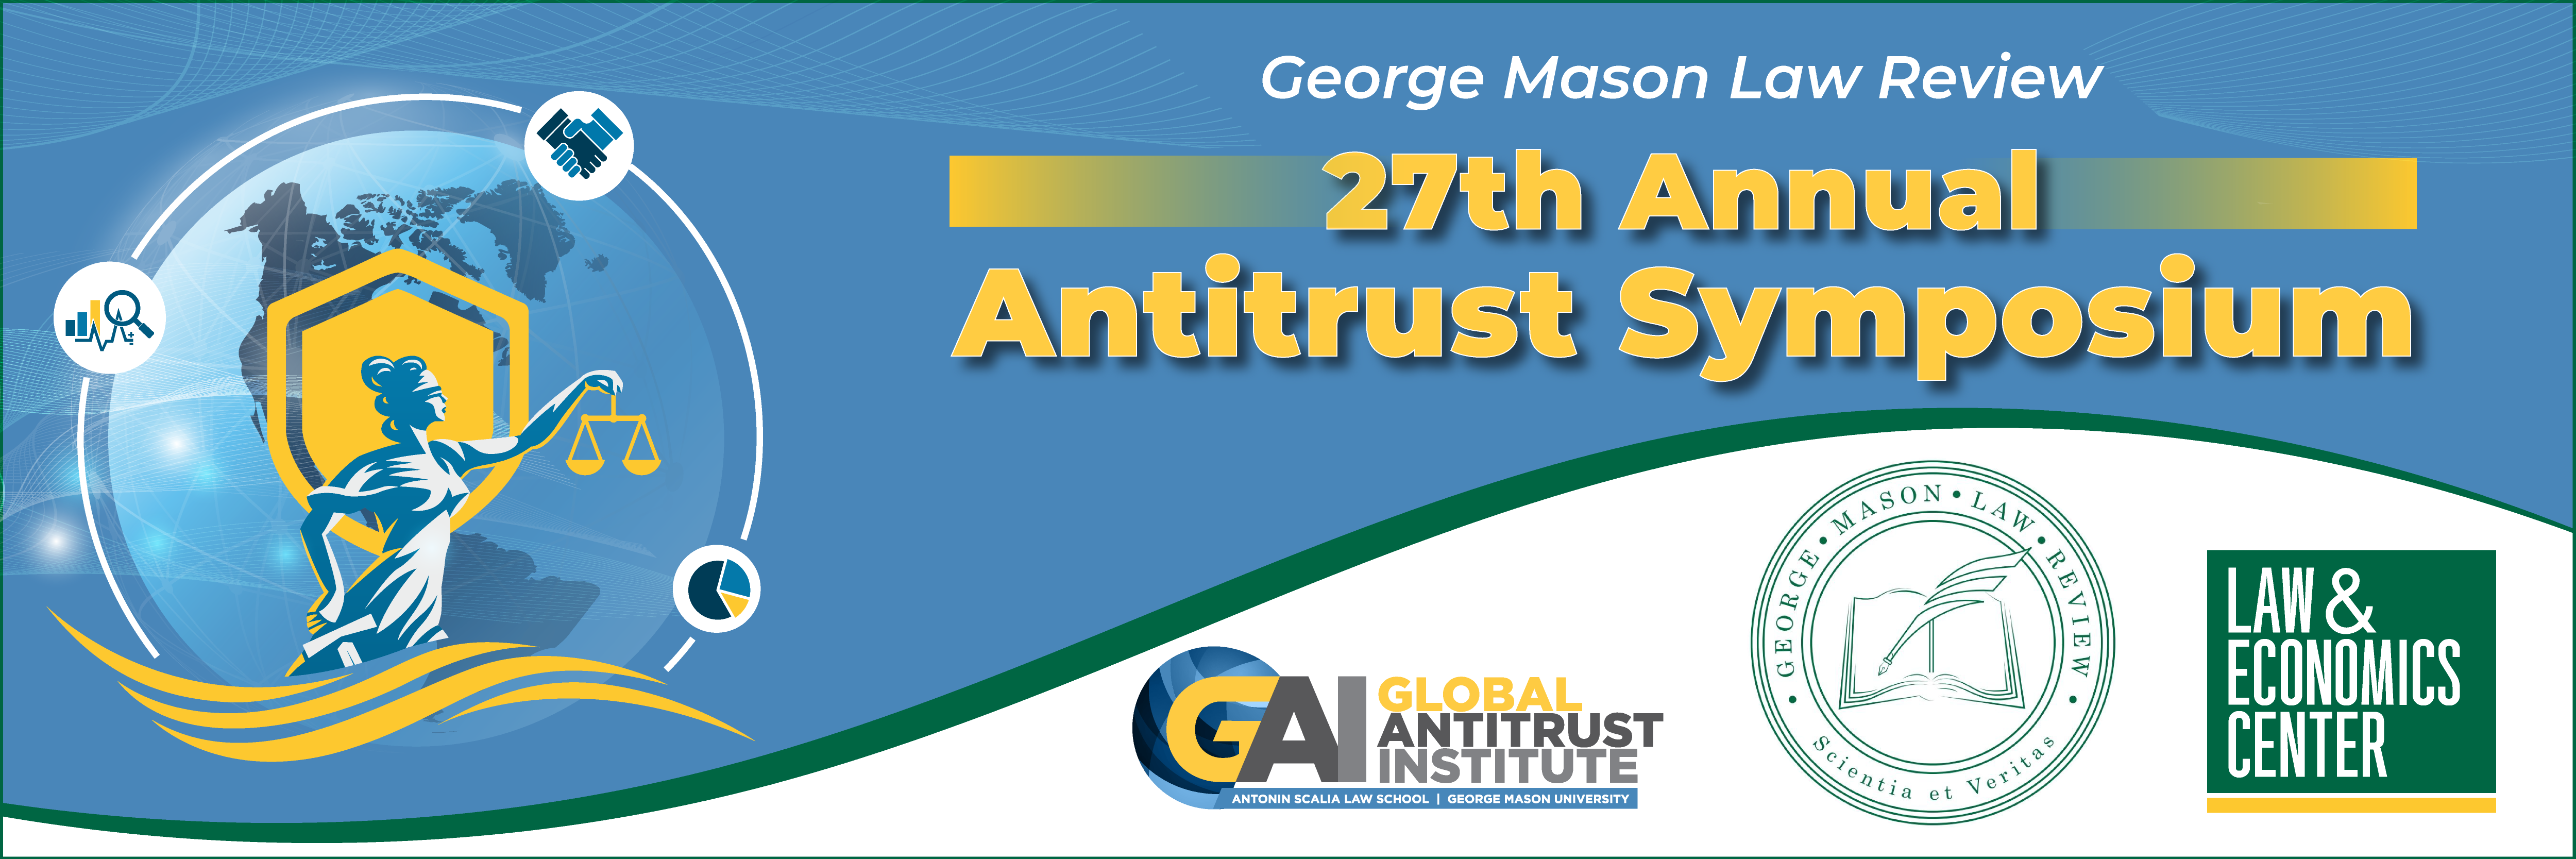 27th Annual Antitrust Symposium Banner